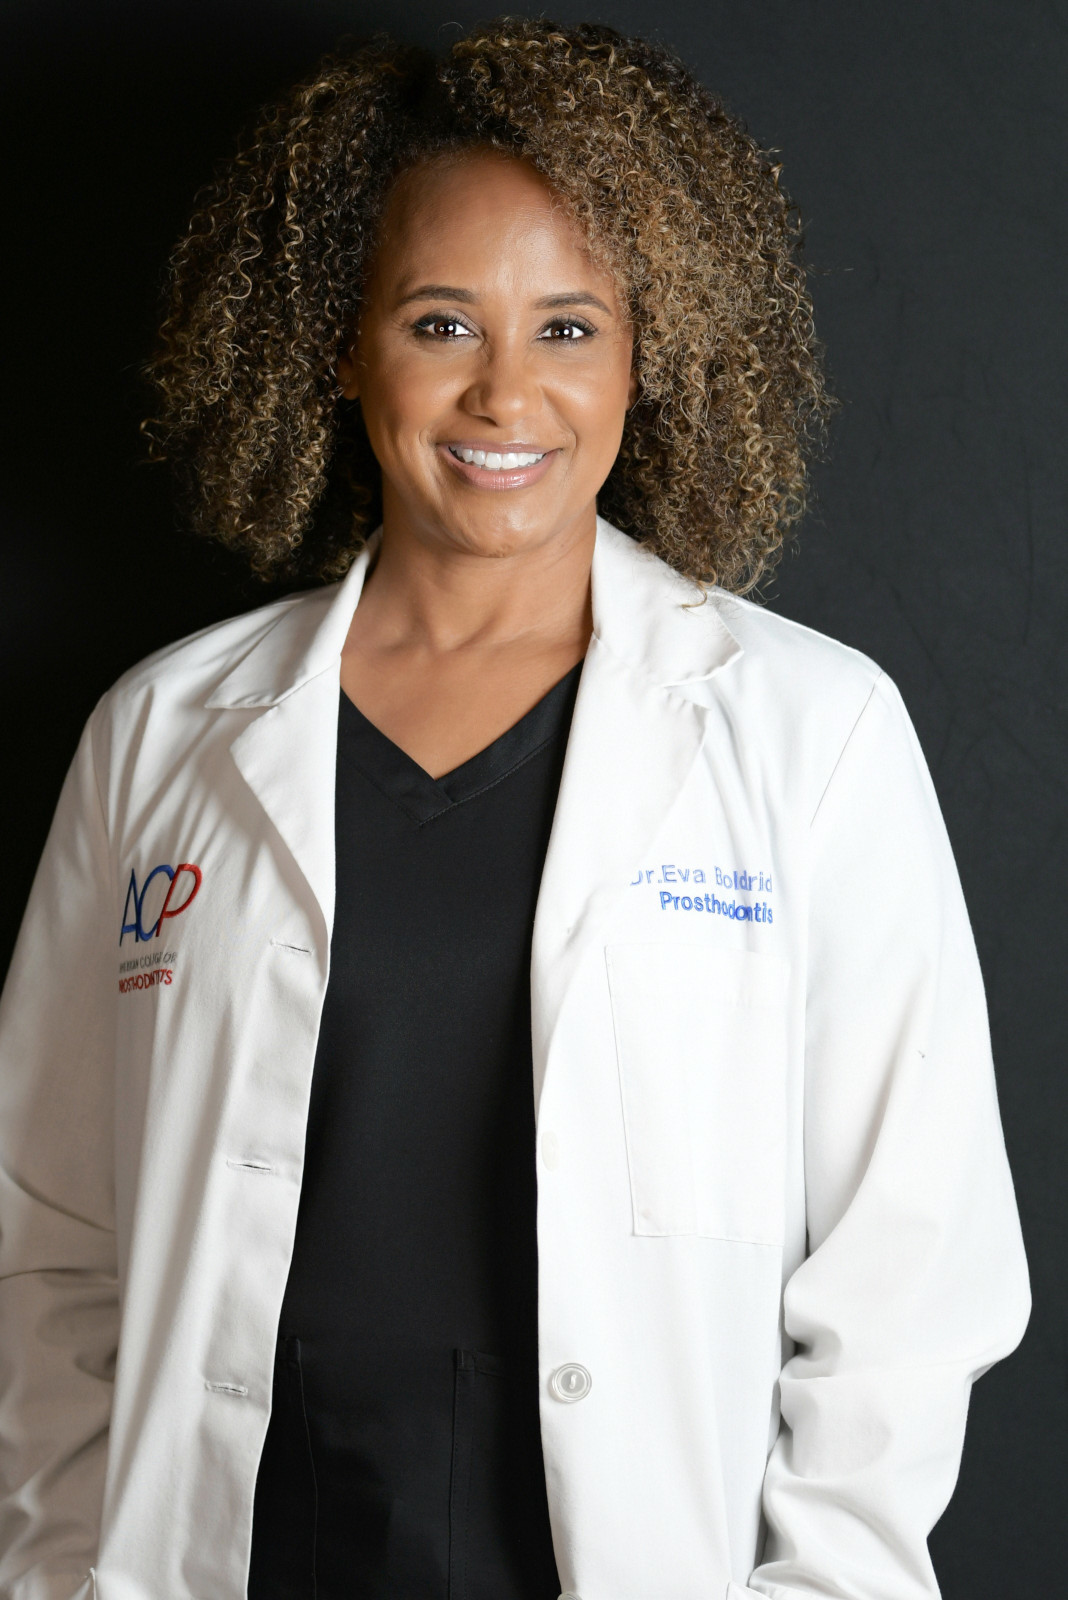 Dr. Eva Boldridge standing in white coat with the prosthodontist